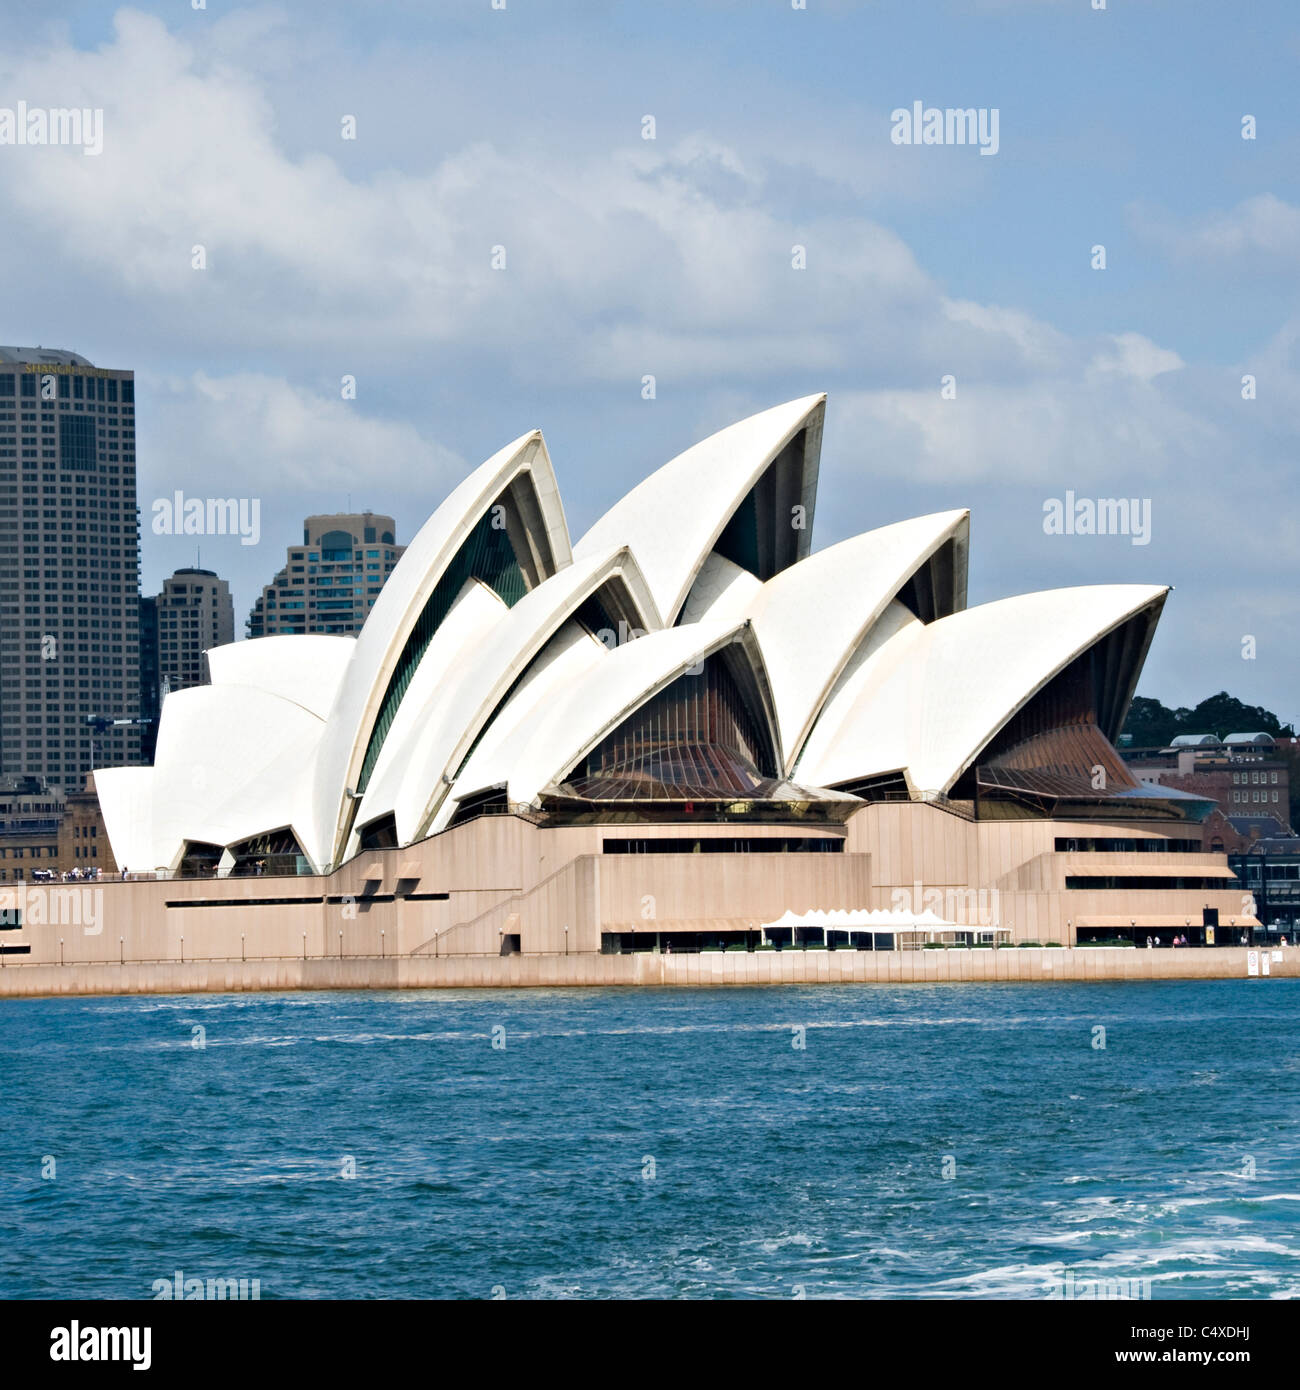 Le magnifique opéra de Sydney sur Bennelong Point dans le port de Sydney New South Wales Australie Banque D'Images